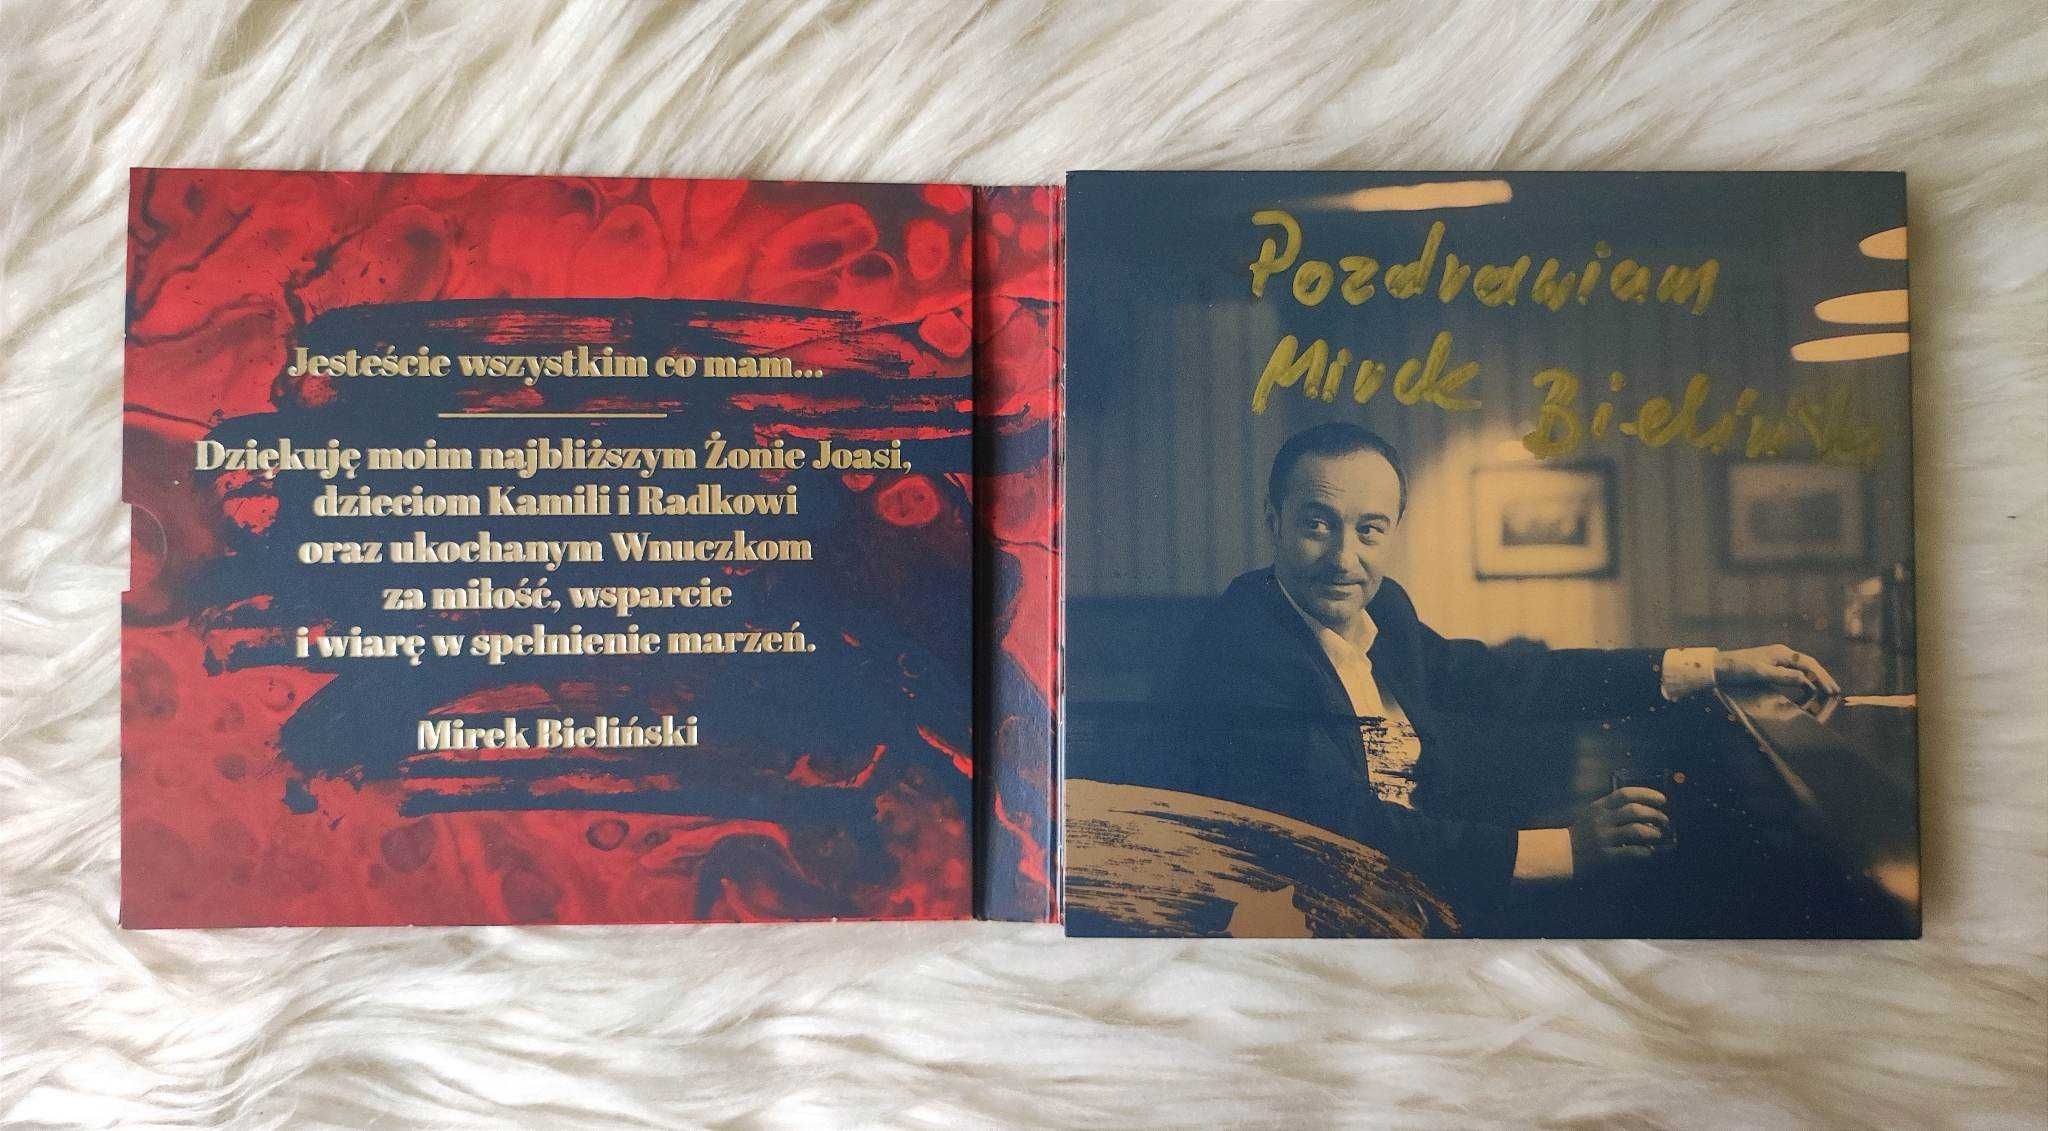 Płyta CD Mirek Bieliński "Na karuzeli życia" z autografem